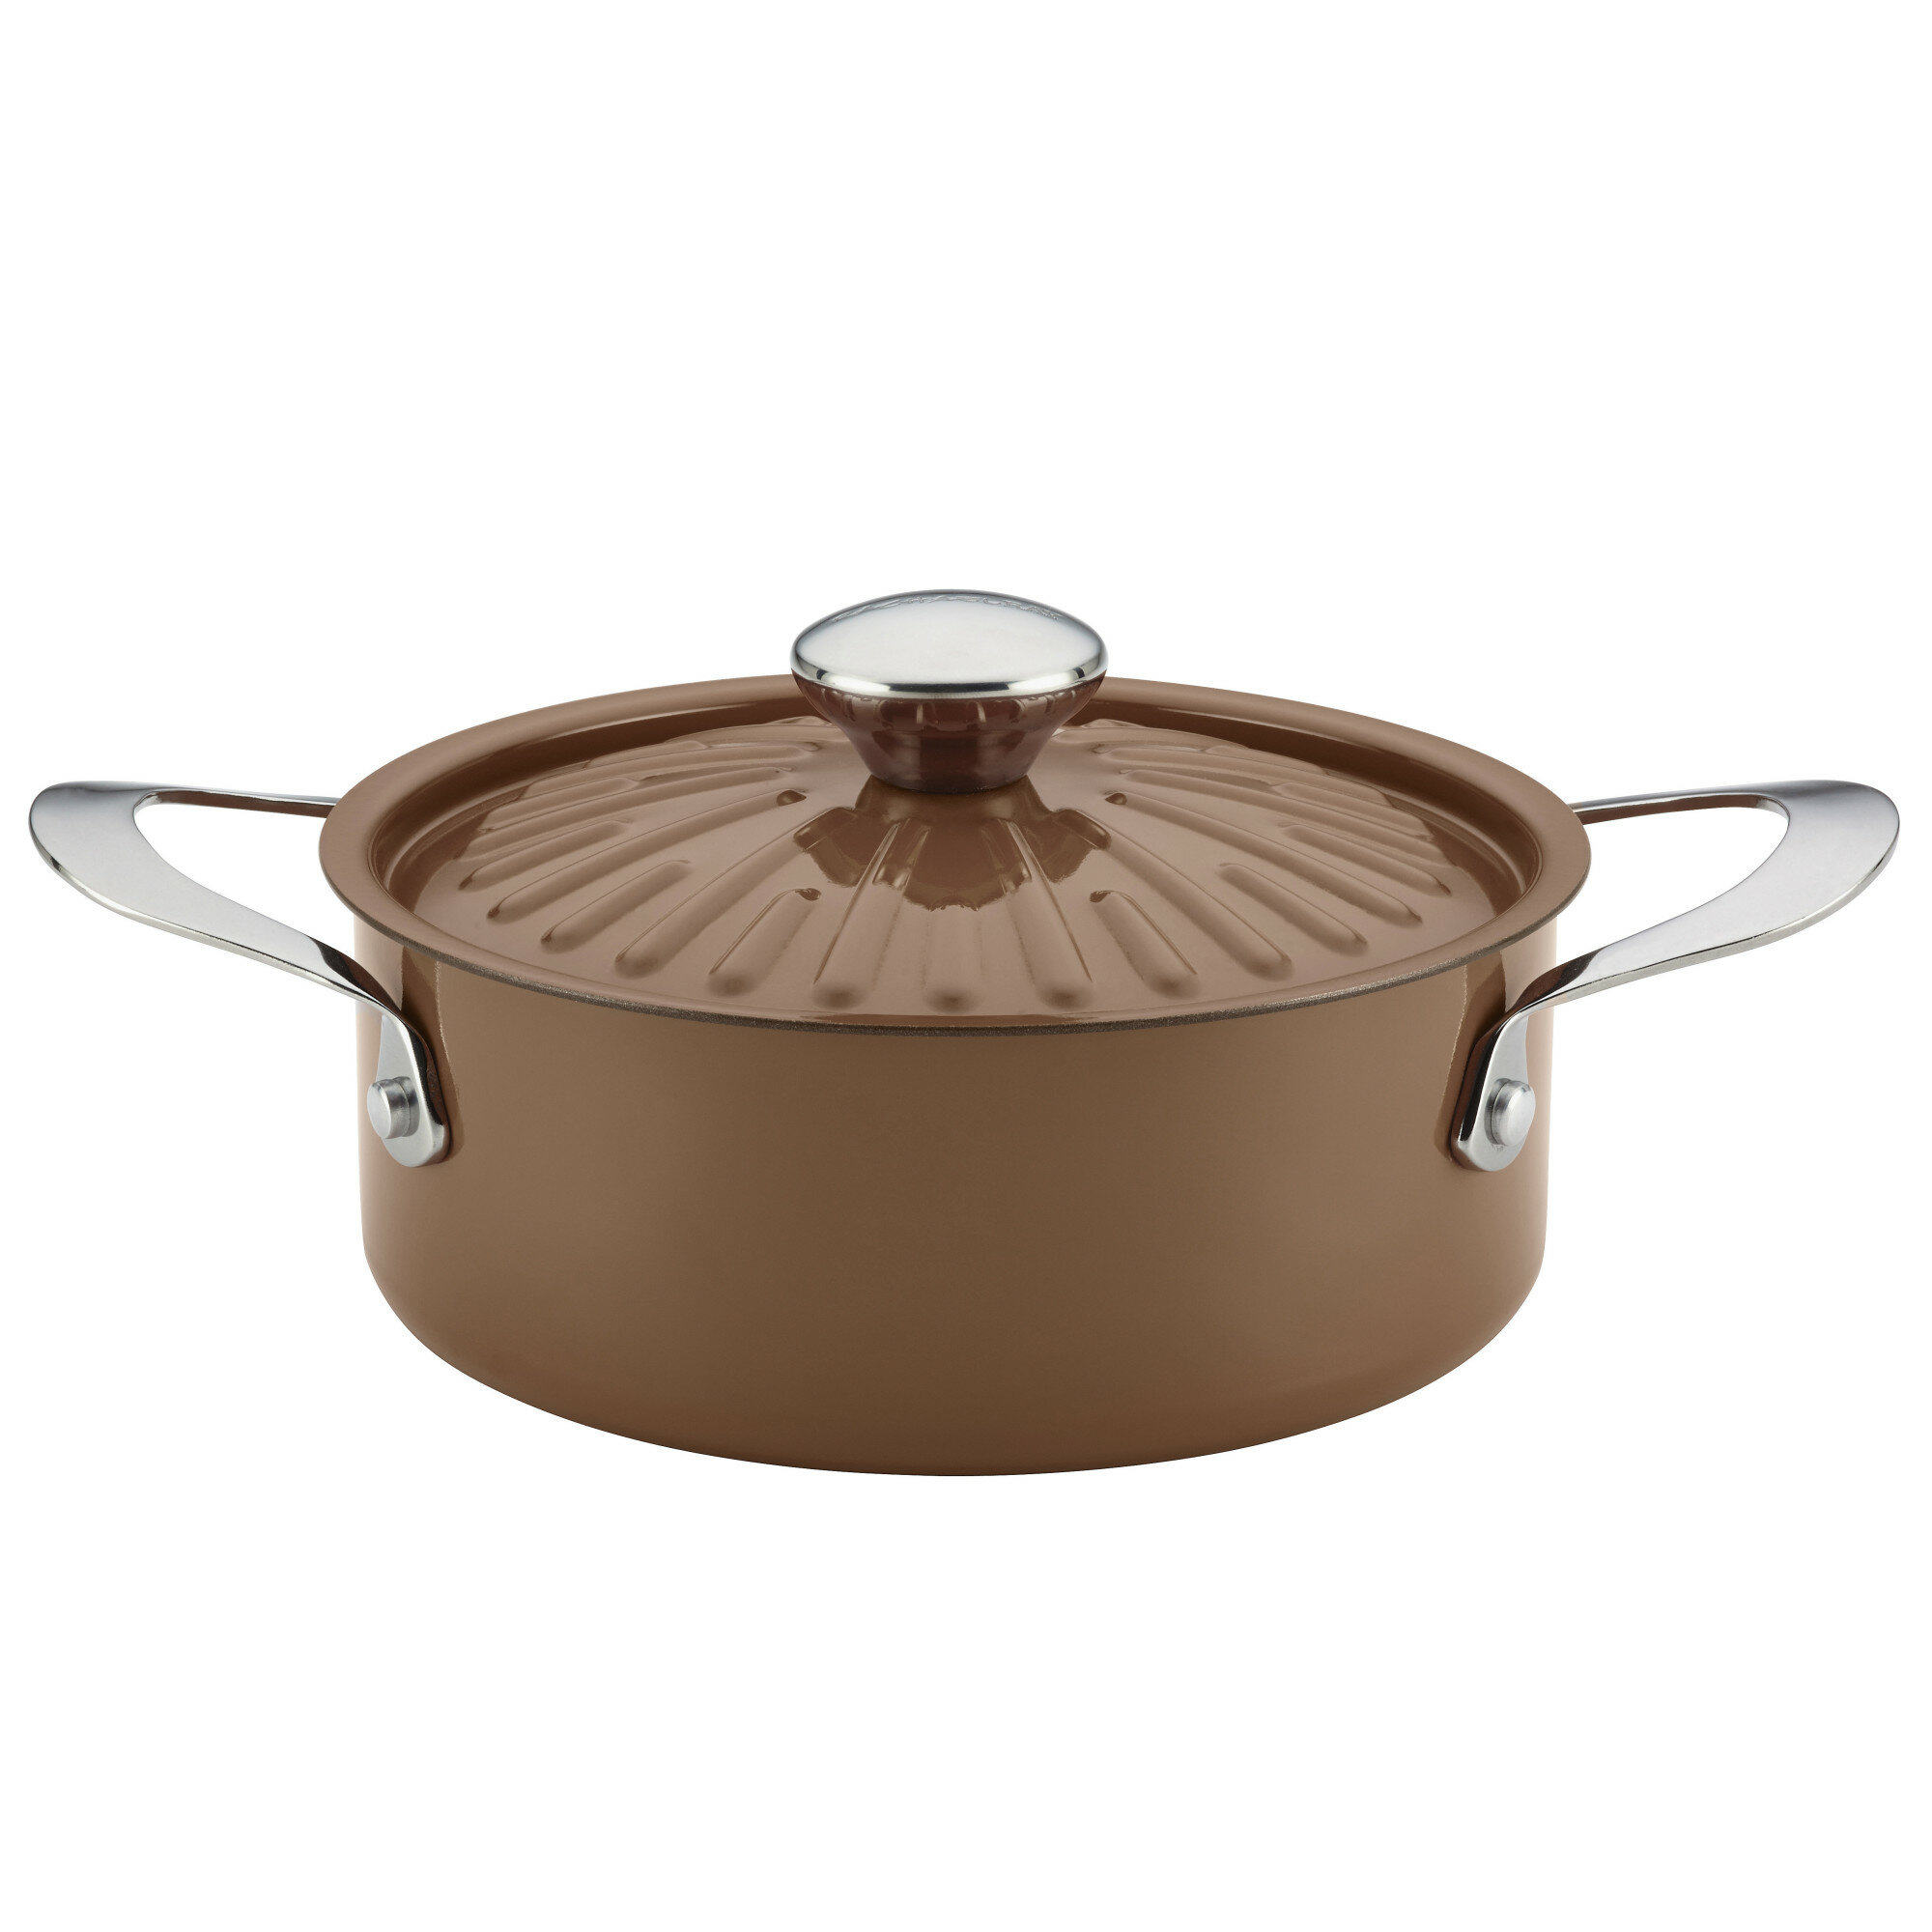 https://assets.wfcdn.com/im/68738030/compr-r85/1142/114227672/cucina-rachael-ray-round-nonstick-aluminum-45-qt-casserole-pan-with-lid.jpg